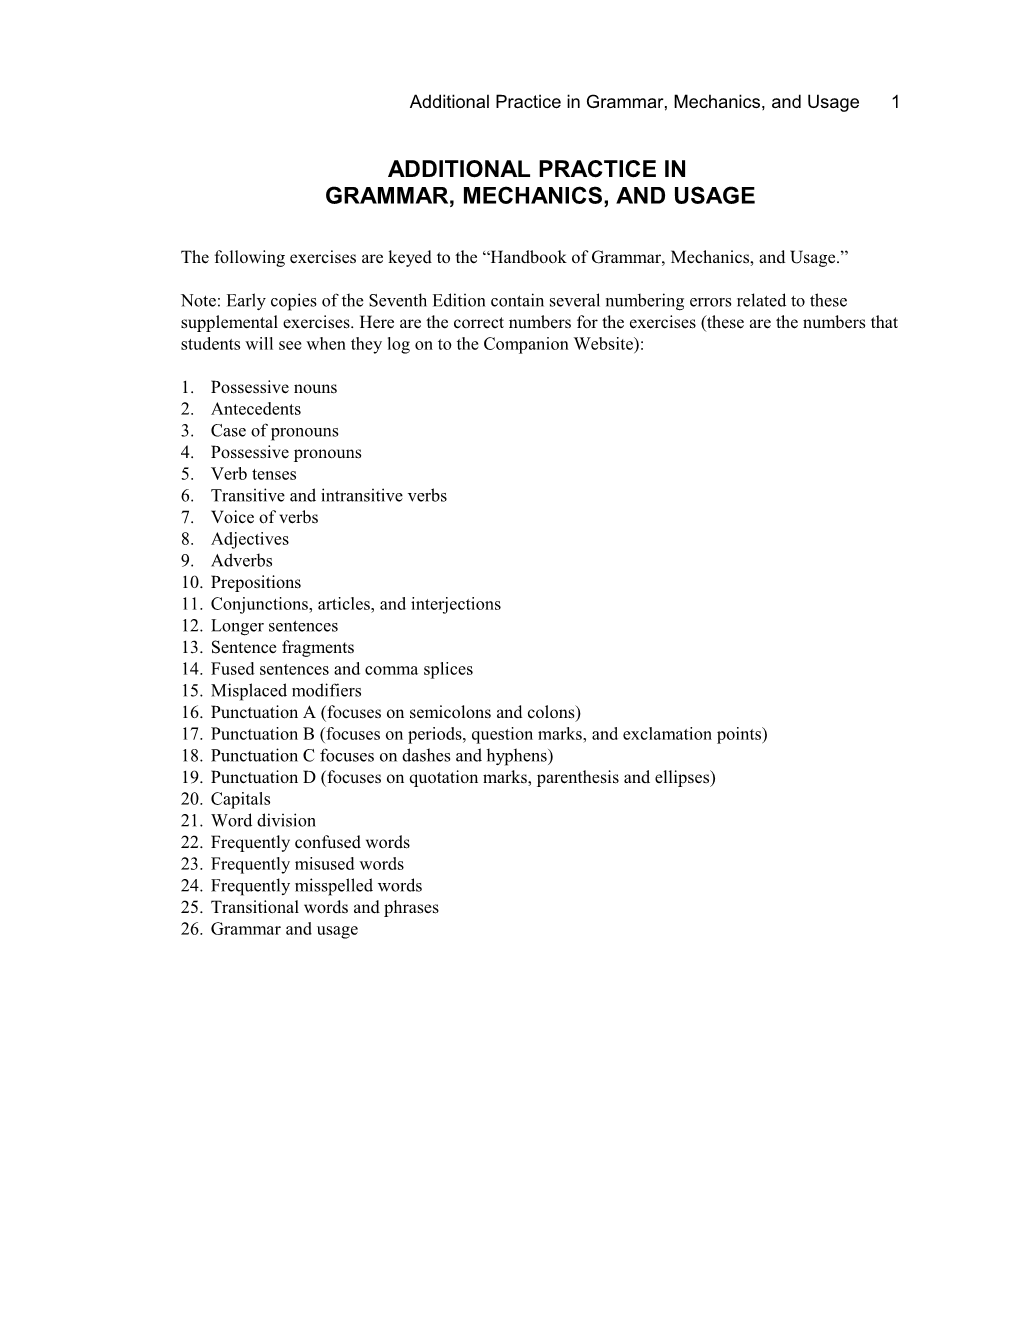 Appendix I: FUNDAMENTALS of GRAMMAR and USAGE